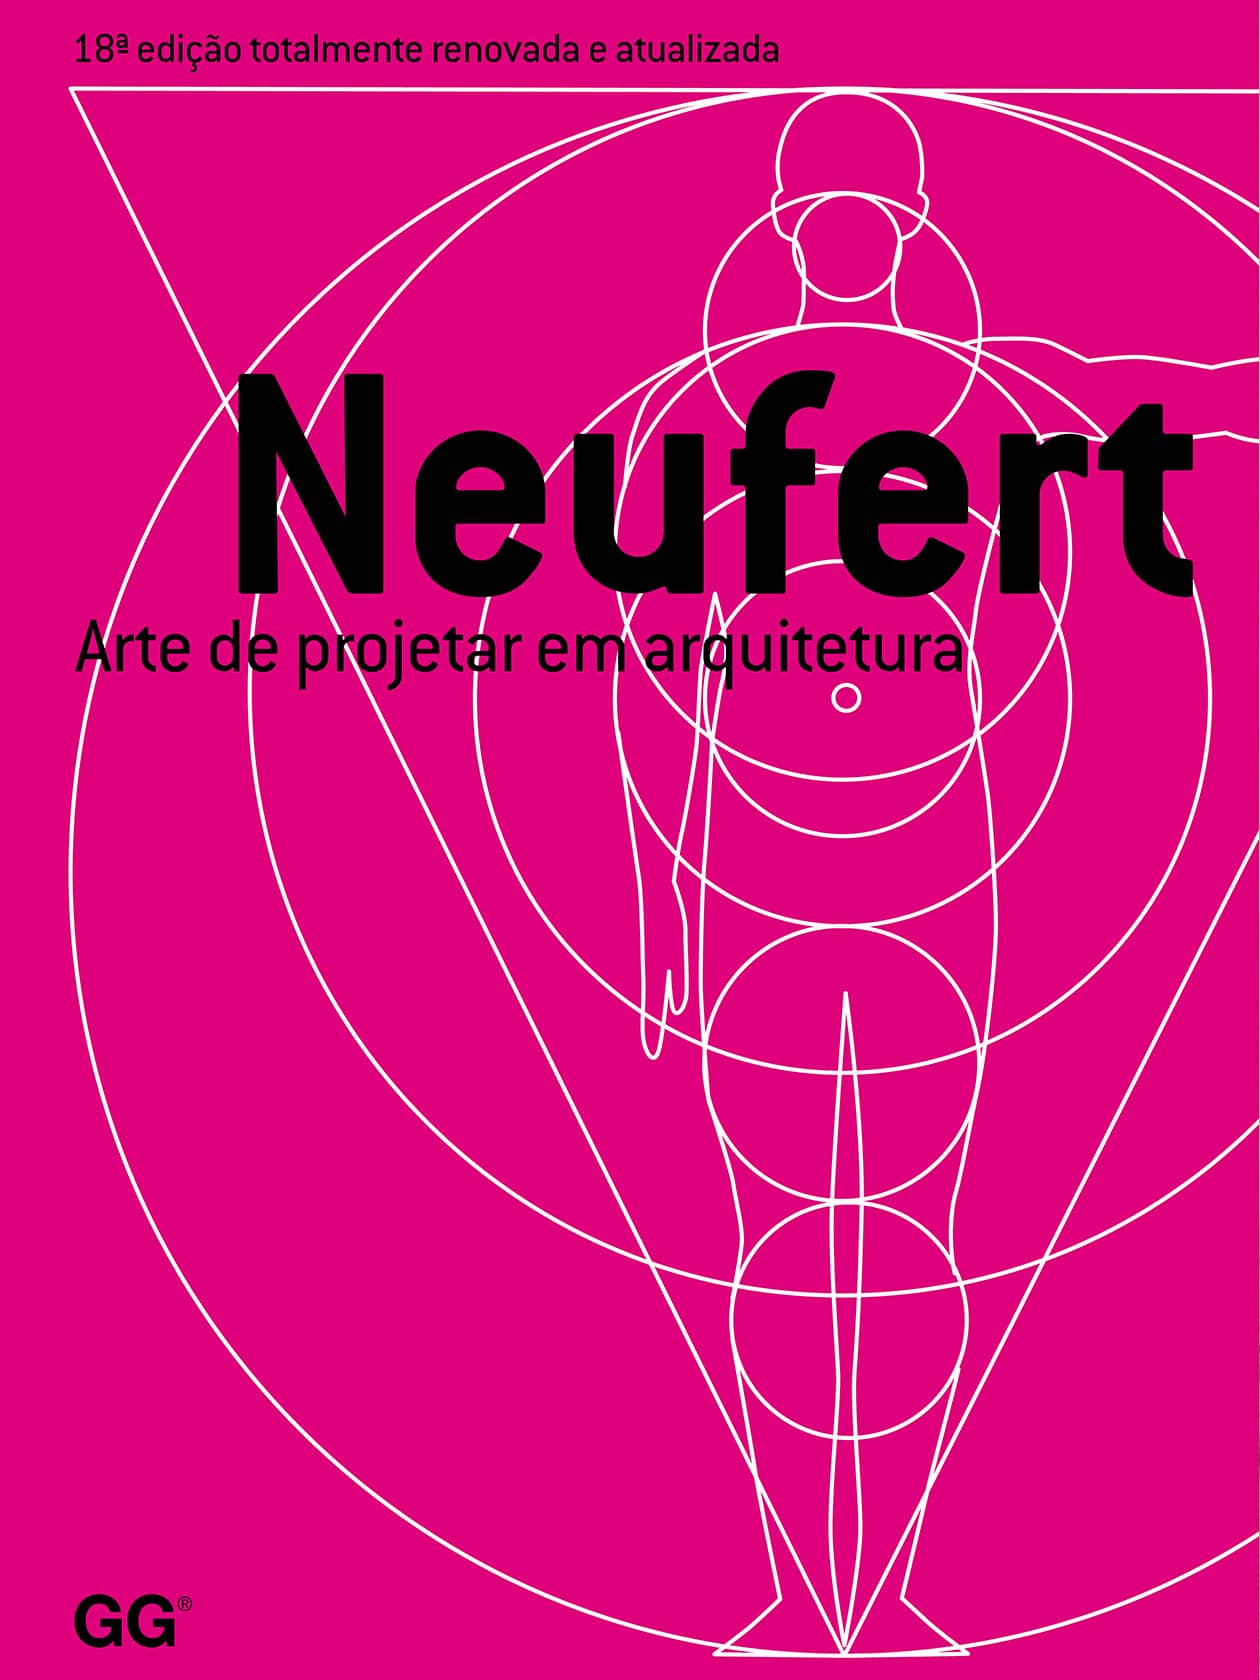 Portuguese edition of the Bauentwurfslehre of Ernst Neufert